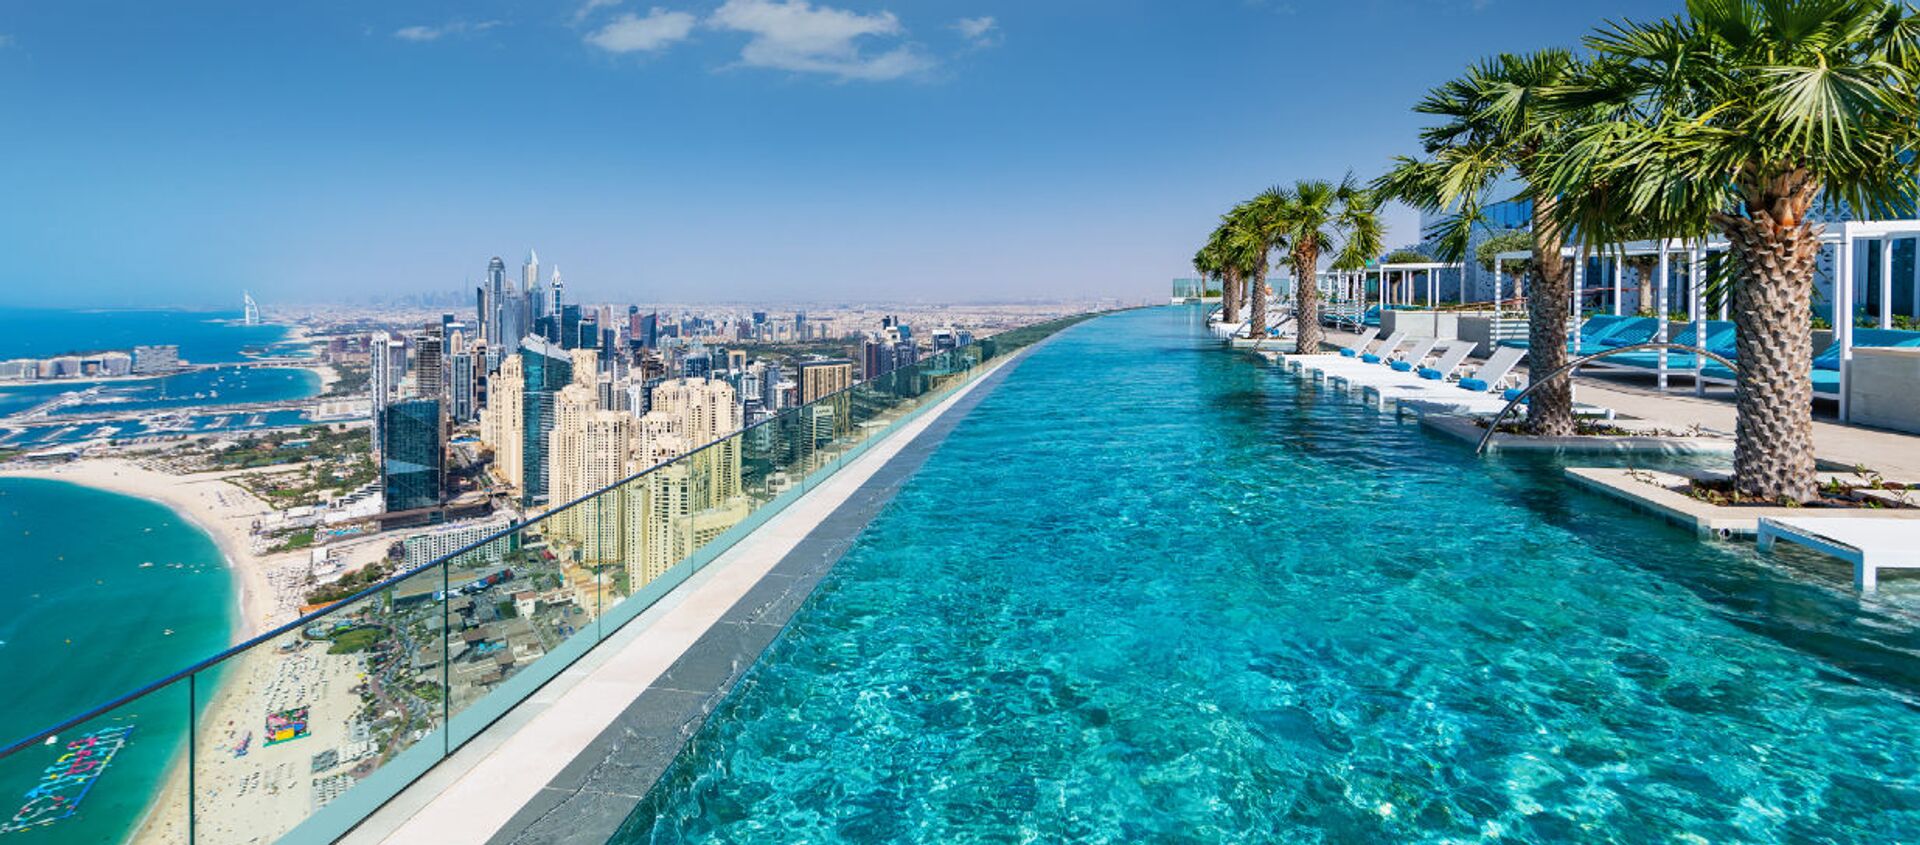 Самый высокий в мире панорамный бассейн Address Beach Resort в Дубае - Sputnik Армения, 1920, 25.06.2021